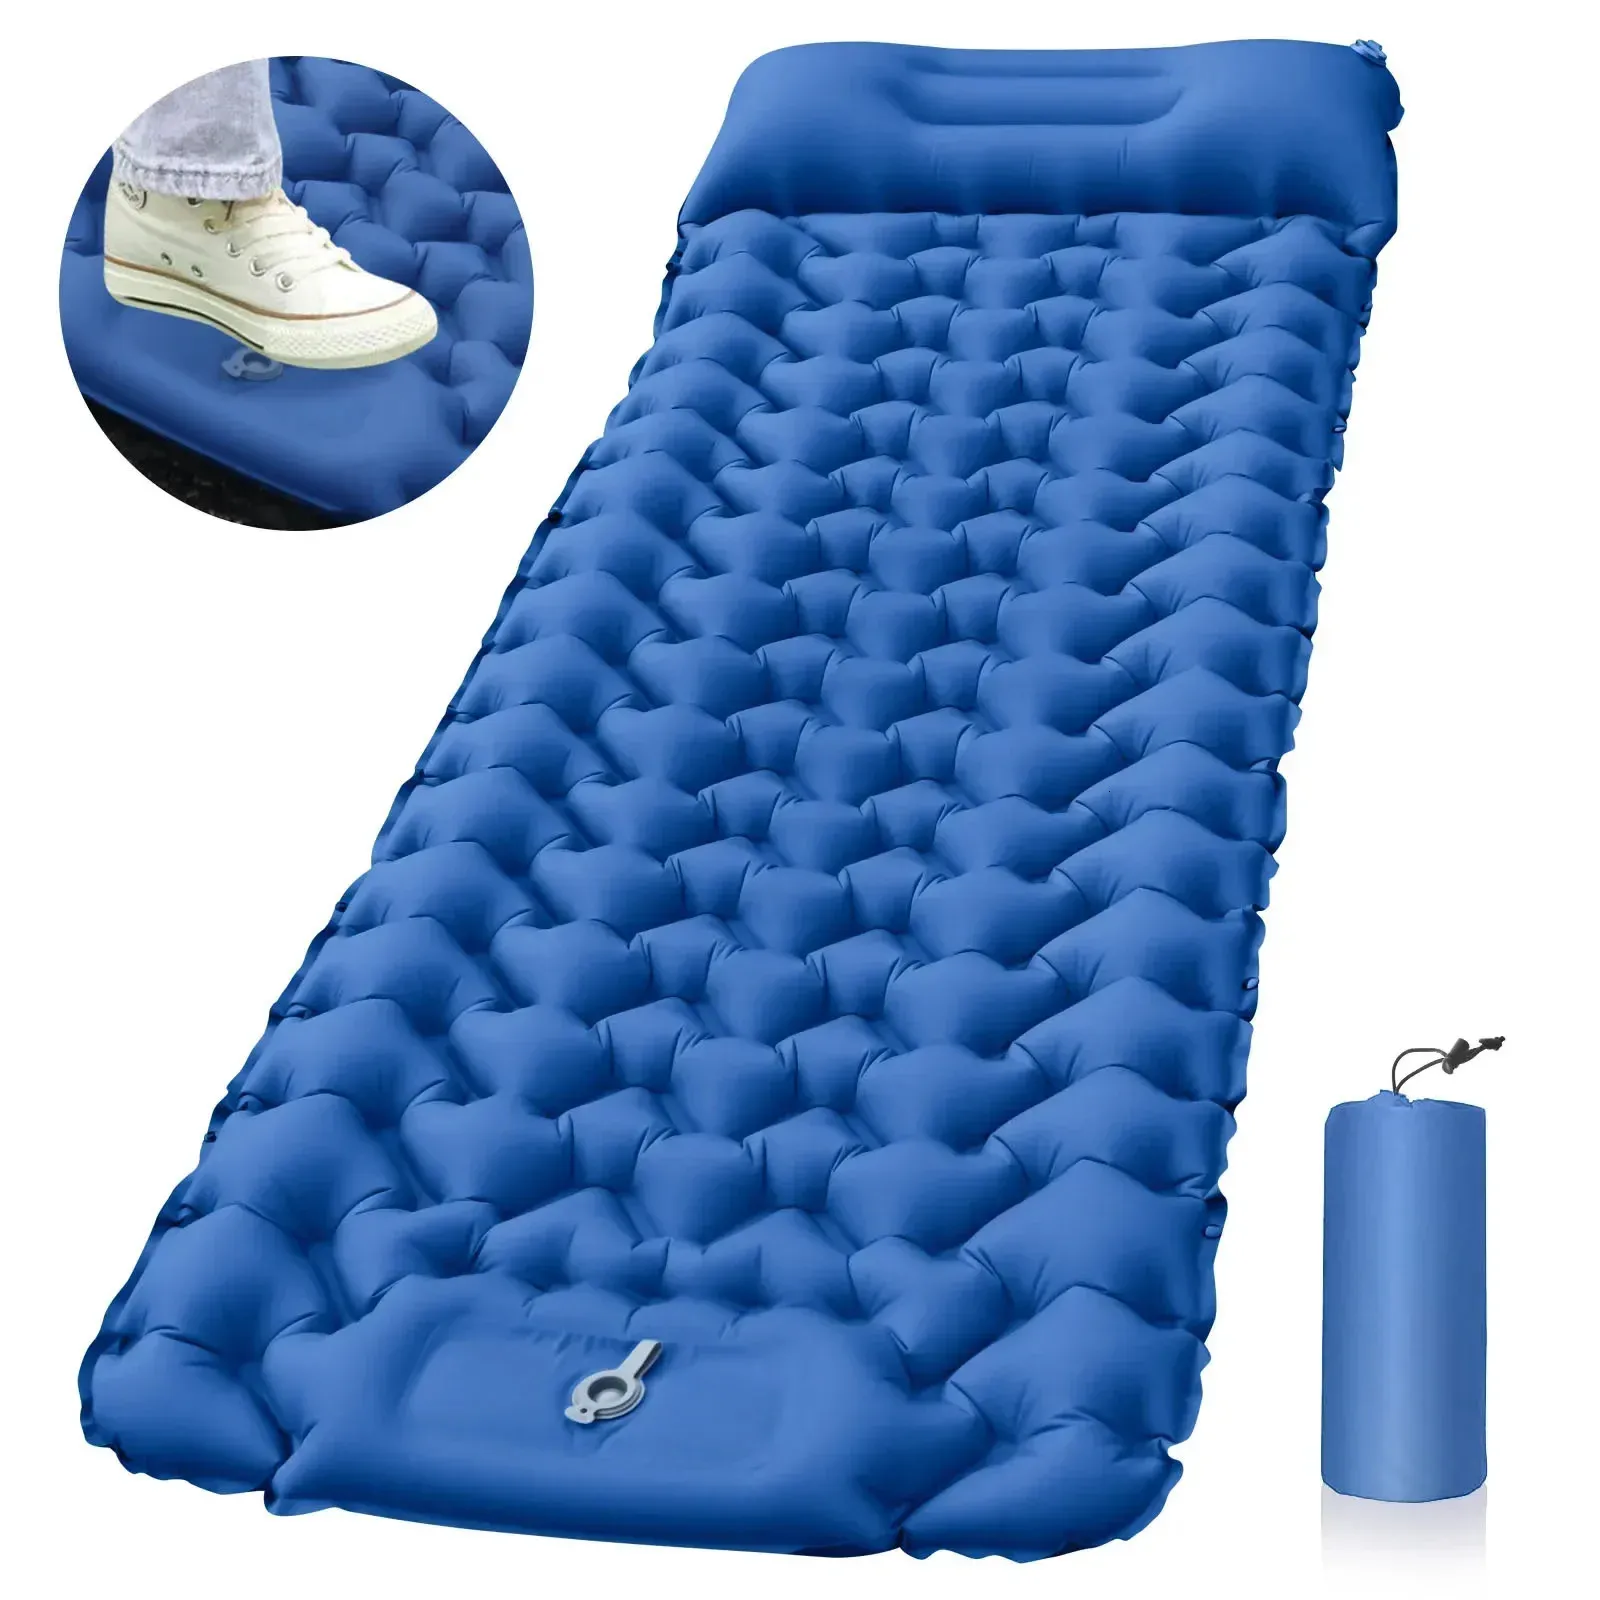 Utomhus Sleeping Pad Camping Uppblåsbar madrass med kuddar Travel Mat Folding Bed Ultralight Air Cushion Treking Trekking 240509